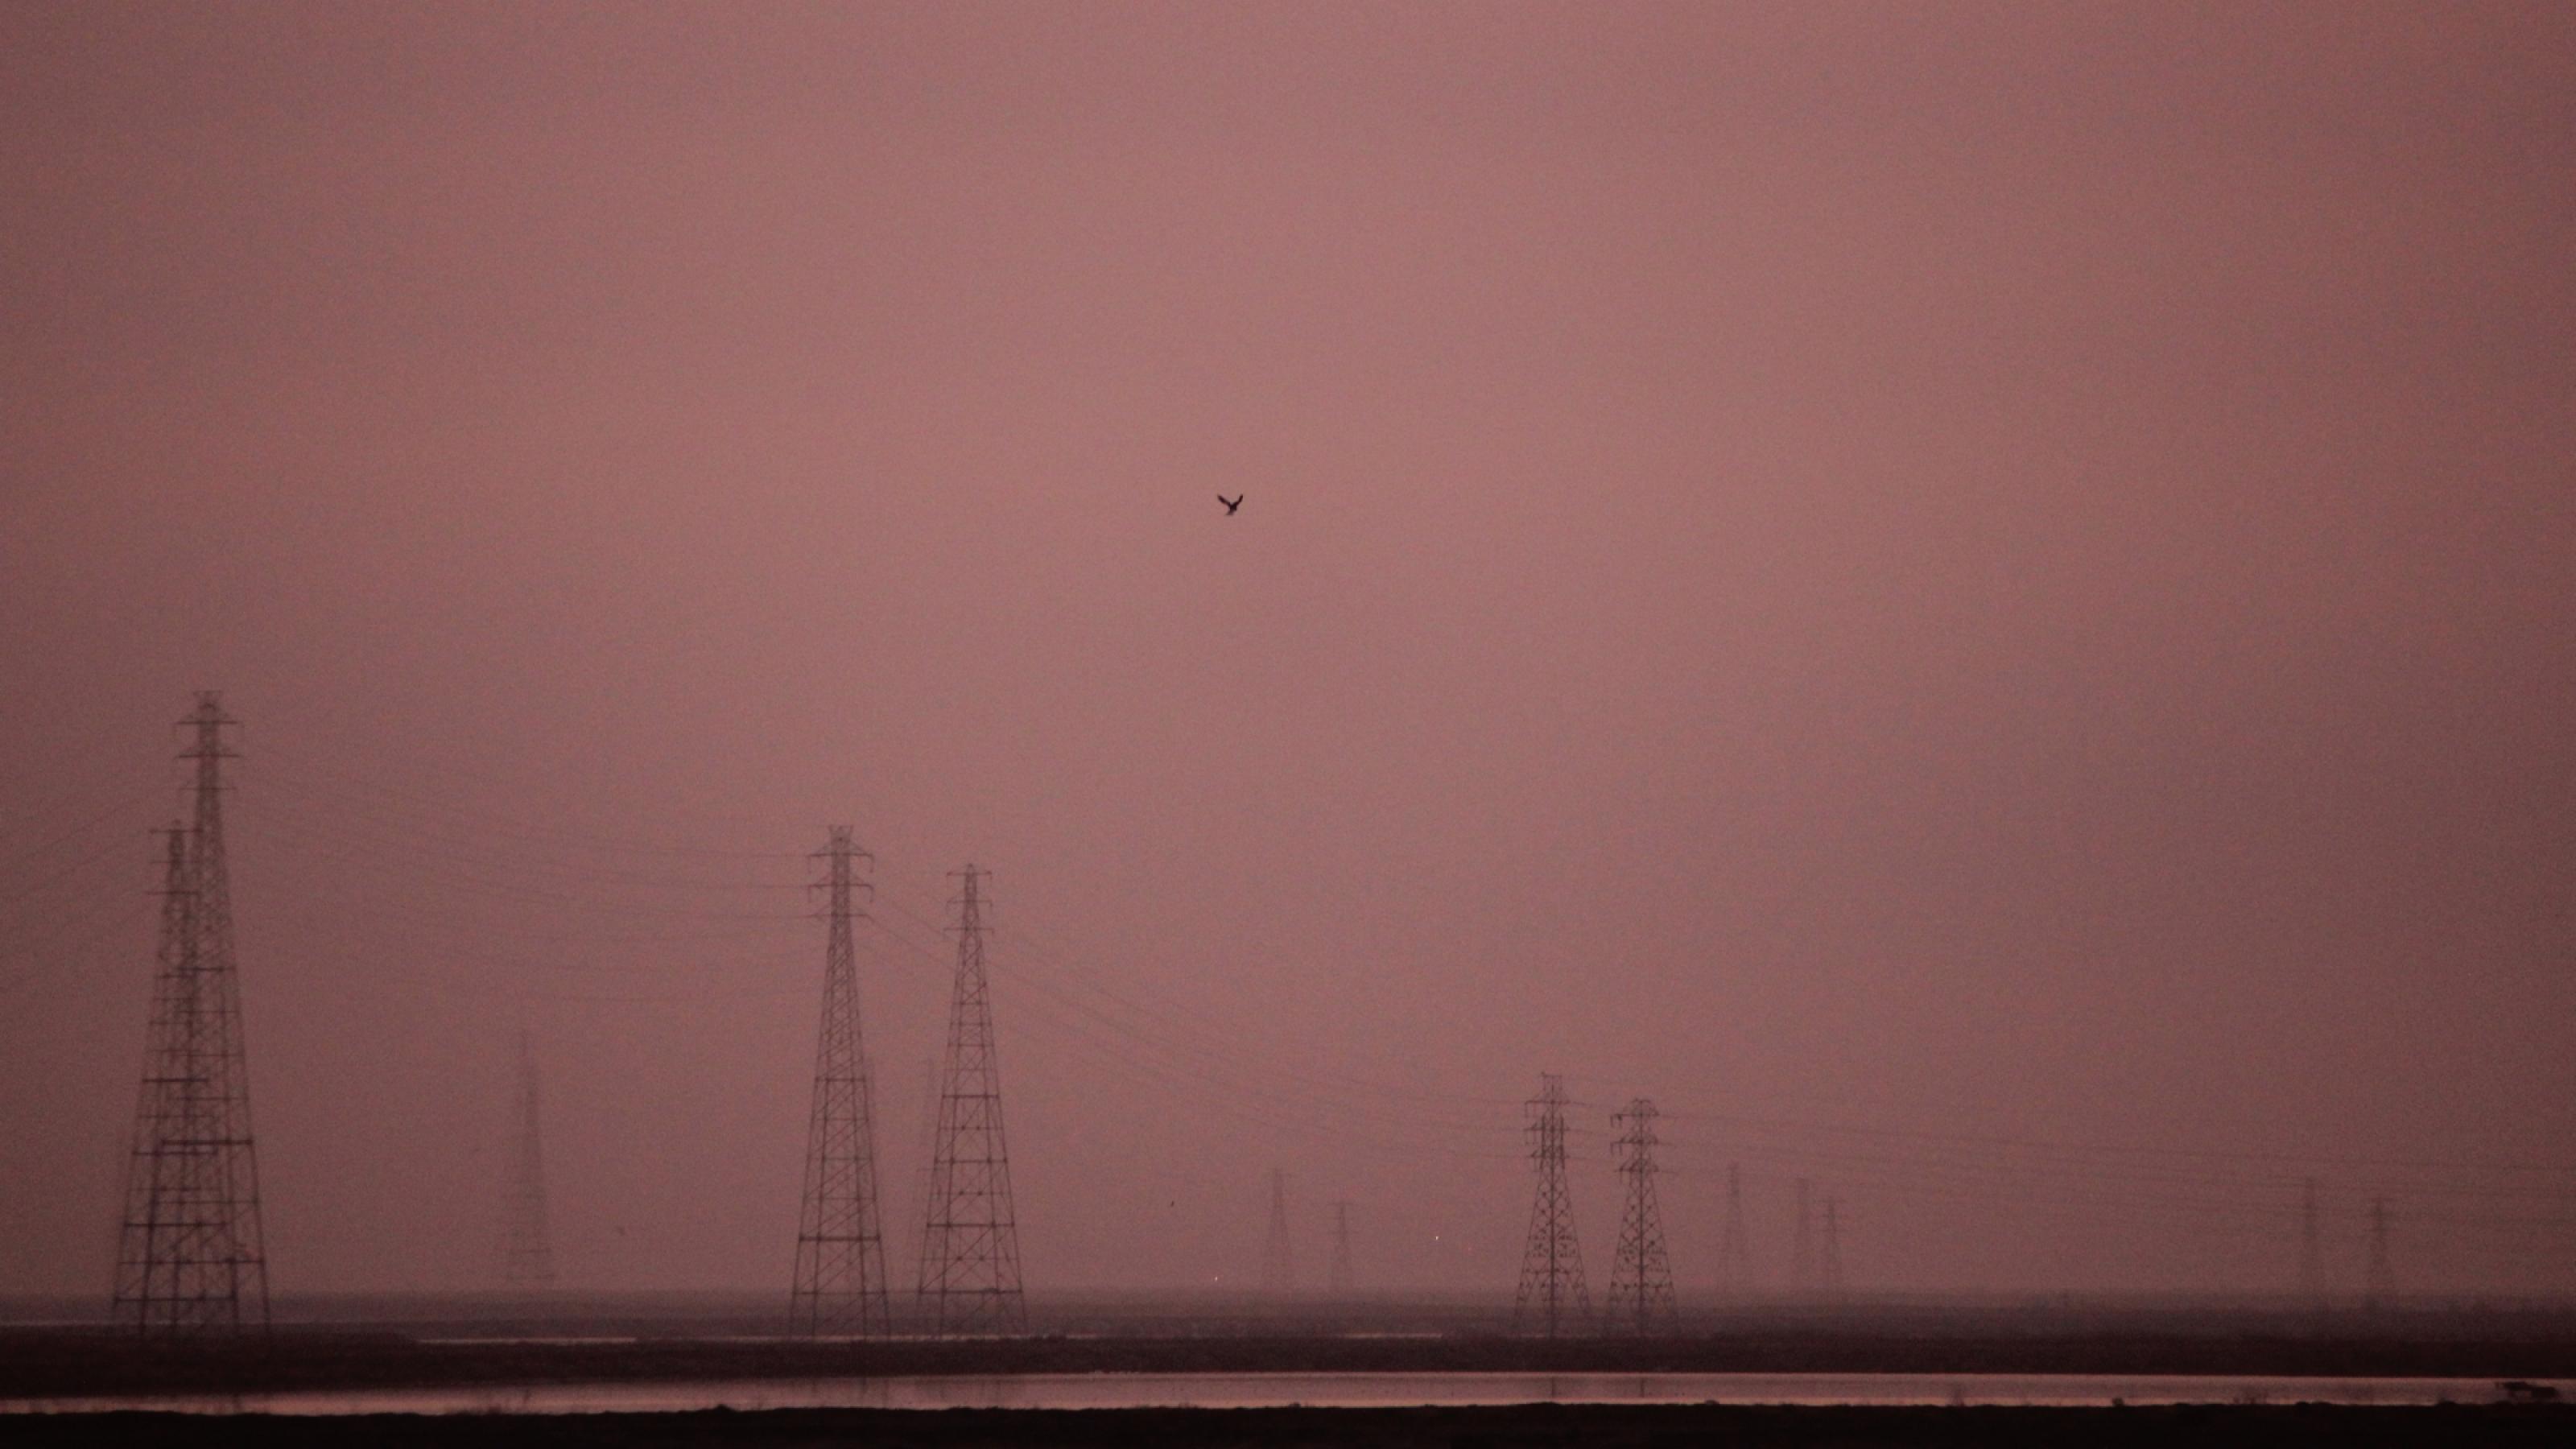 Das Bild zeigt eine in Himmelsrot getauchte Landschaft in der Bucht von San Francisco, unweit des Google-Hauptquartiers. Ein Vogel – ein Weißschwanzgleitaar – schwebt am Himmel über dem Baylands Nature Preserve, im Hintergrund sind Strommasten zu sehen.